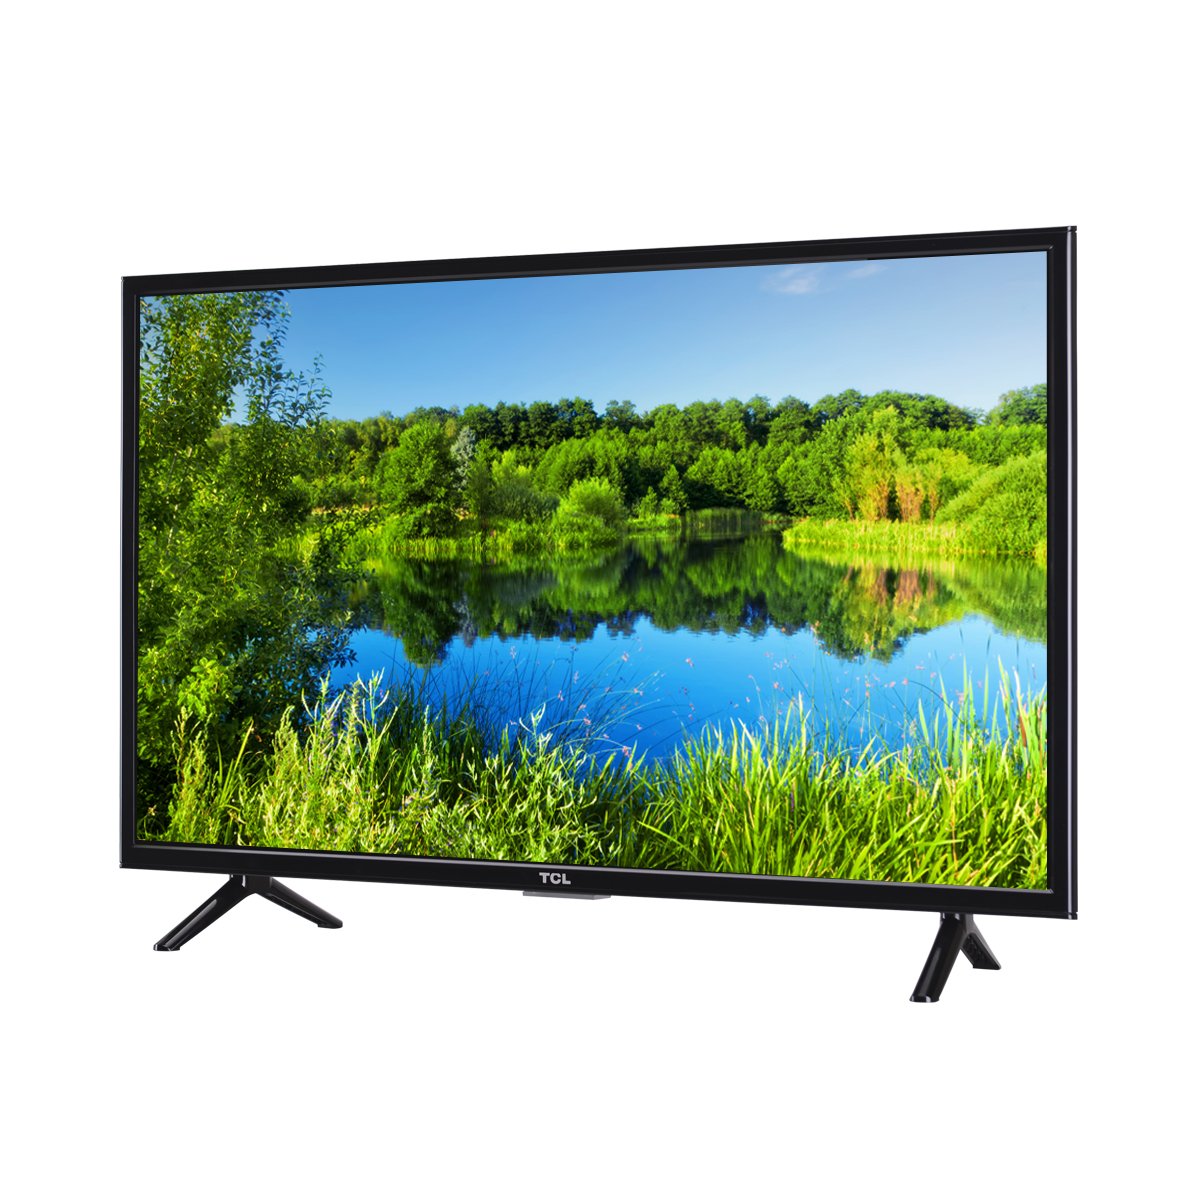 Телевизоры 32 дюйма купить в спб недорого. Смарт телевизор ТСЛ 32 дюйма. Led телевизор TCL led32d2910. Телевизор TCL led32d2910 32" (2019). TCL 32s5400a.